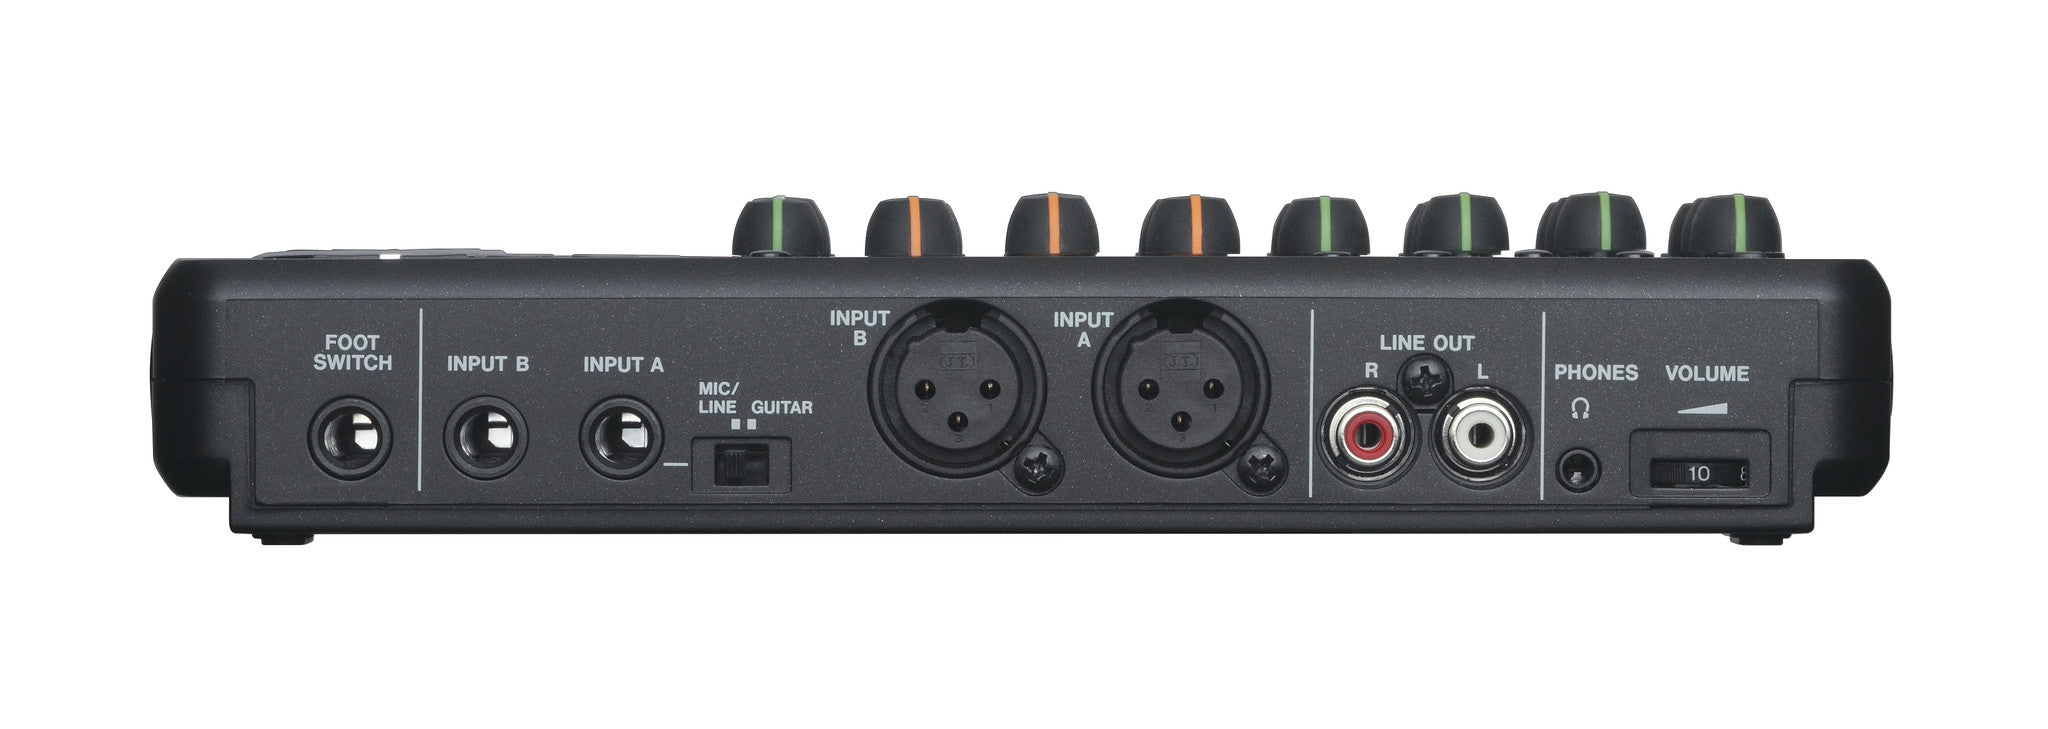 Recording Equipment - Tascam - Tascam DP-008EX - Professional Audio Design, Inc